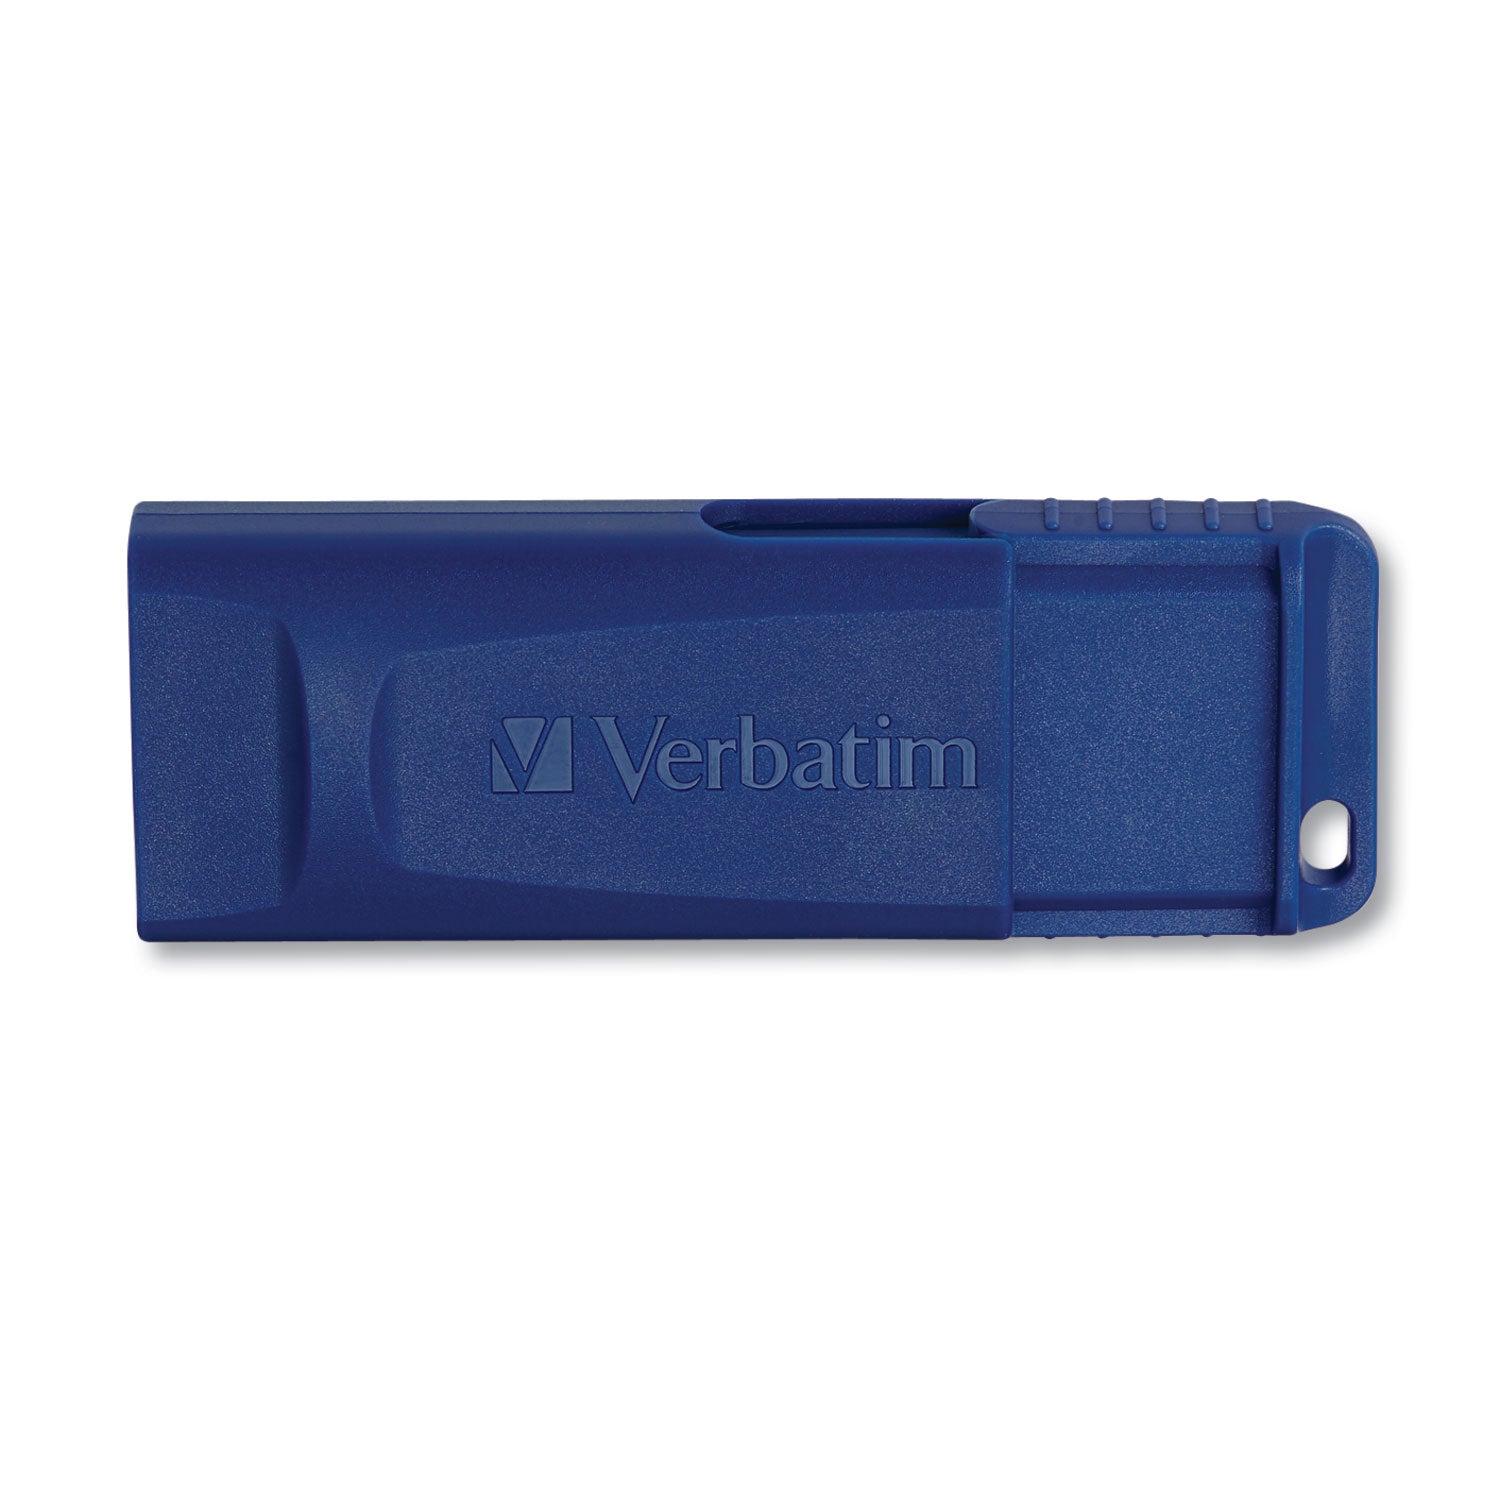 Classic USB 2.0 Flash Drive, 32 GB, Blue - 